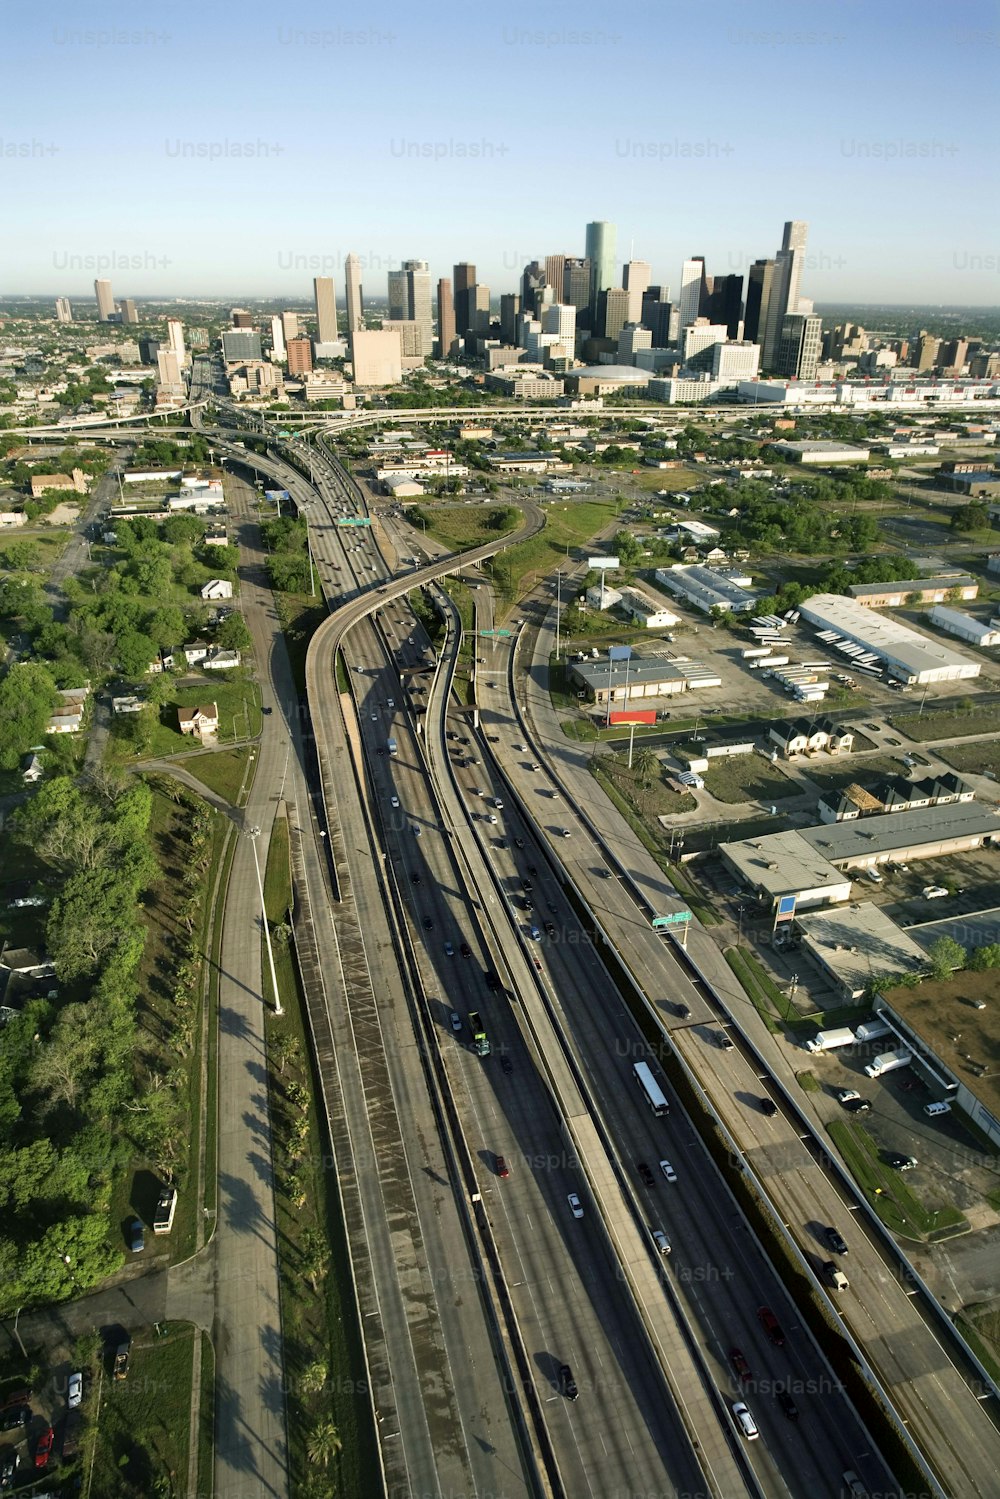 Una veduta aerea di una città con un treno sui binari